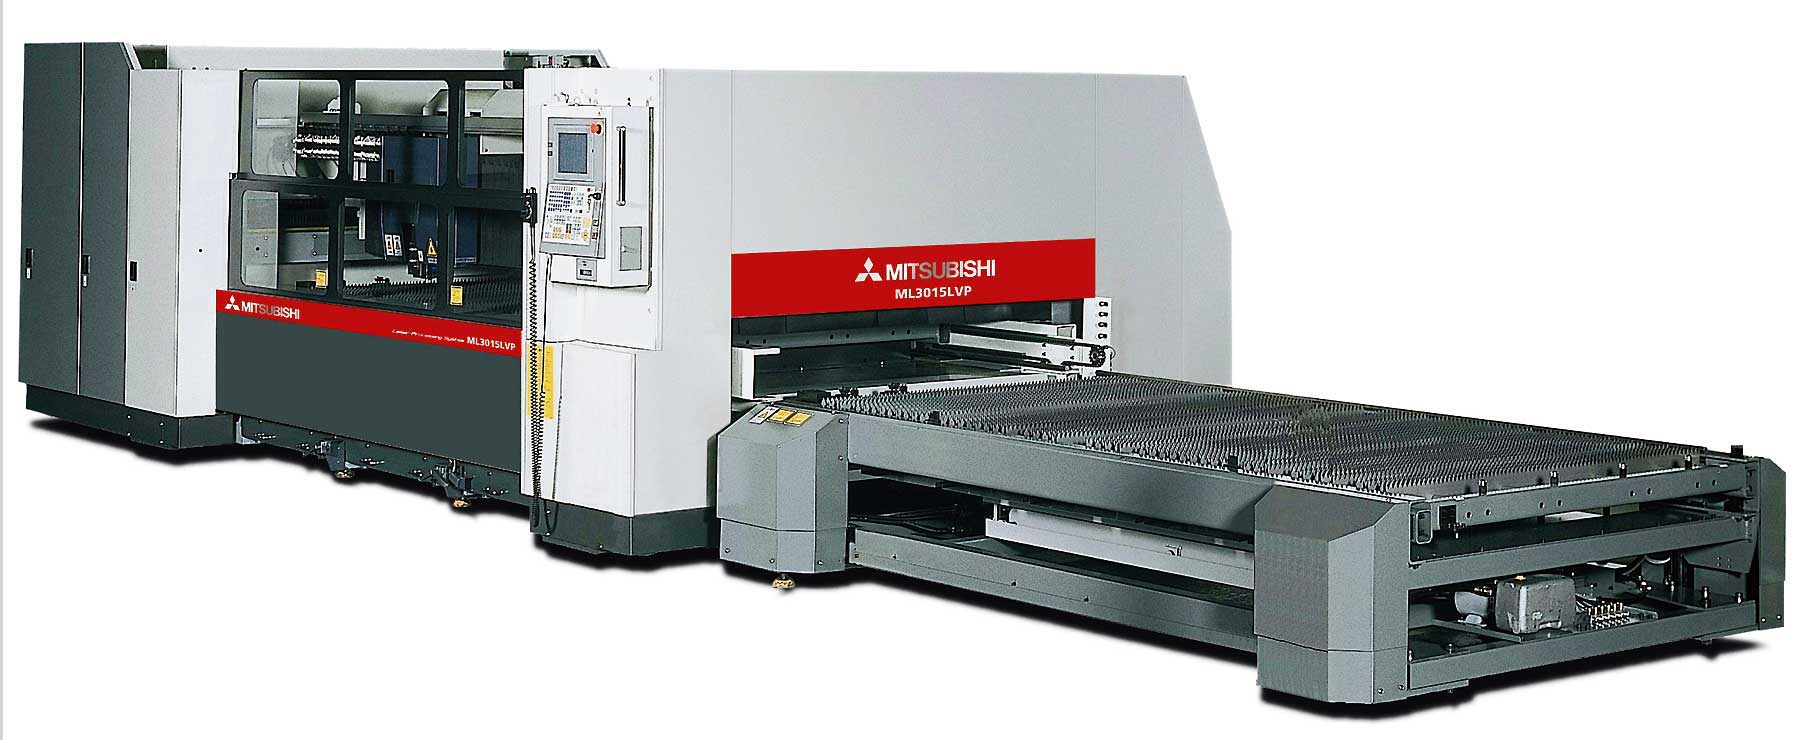 Das Laserschneidsystem ML3015LVP bedient Verfahrwege von 3 100 x 1 550 mm. 